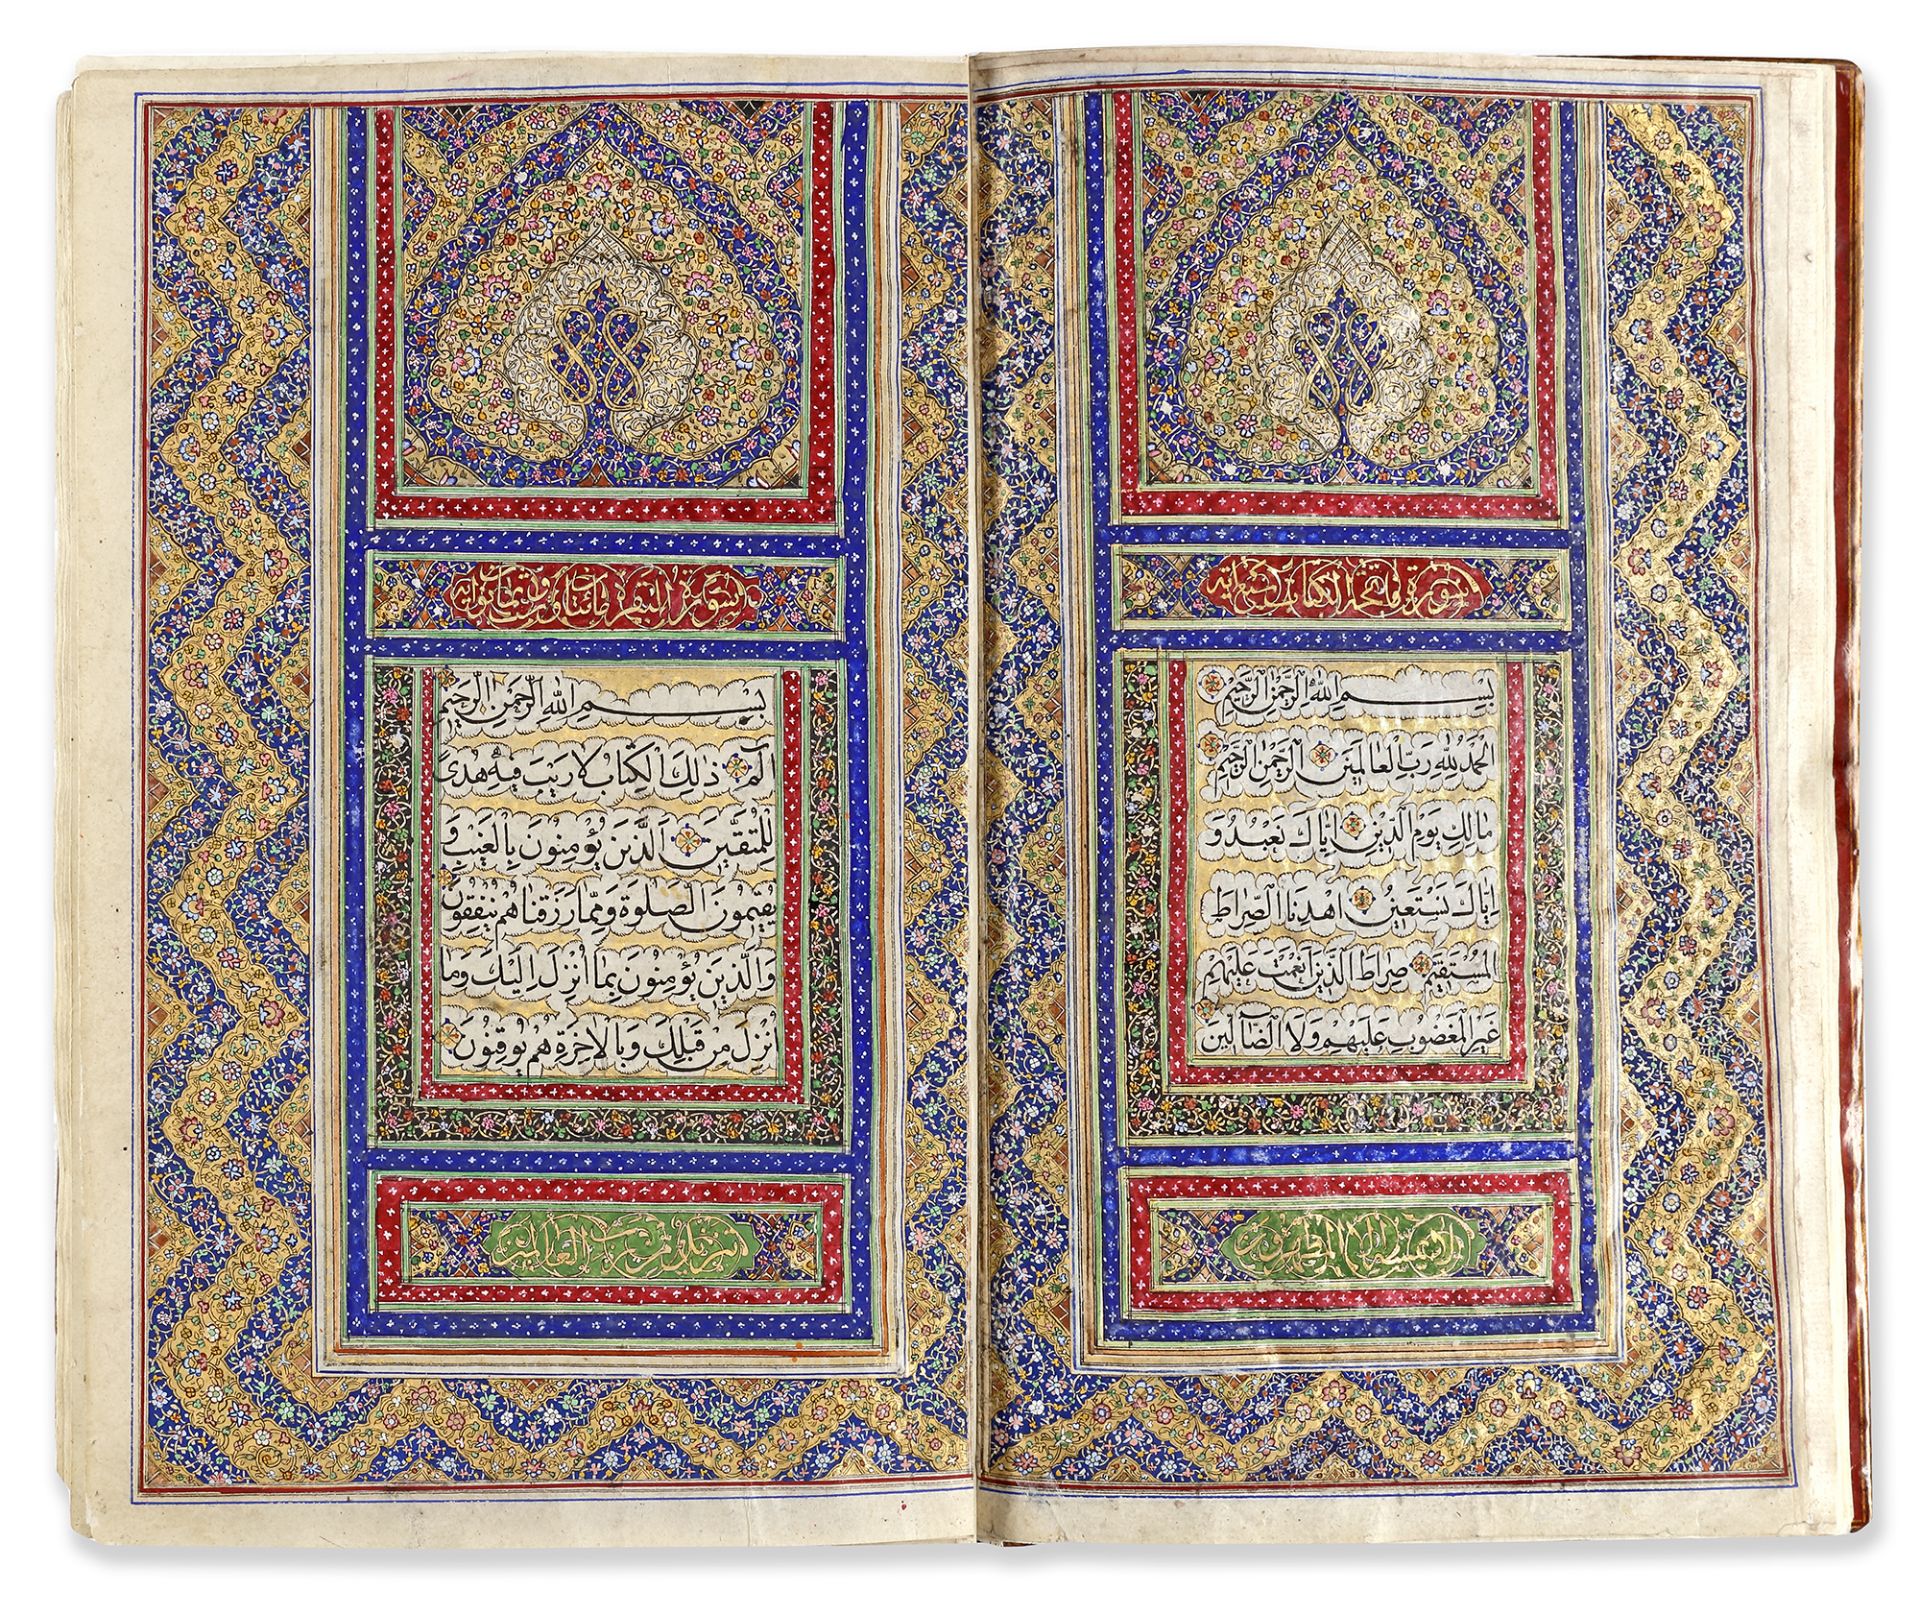 AN ILLUMINATED QAJAR QURAN BY MIRZA AHMAD WAQAR AL-SHIRAZI, DATED 1271 AH/1854 AD